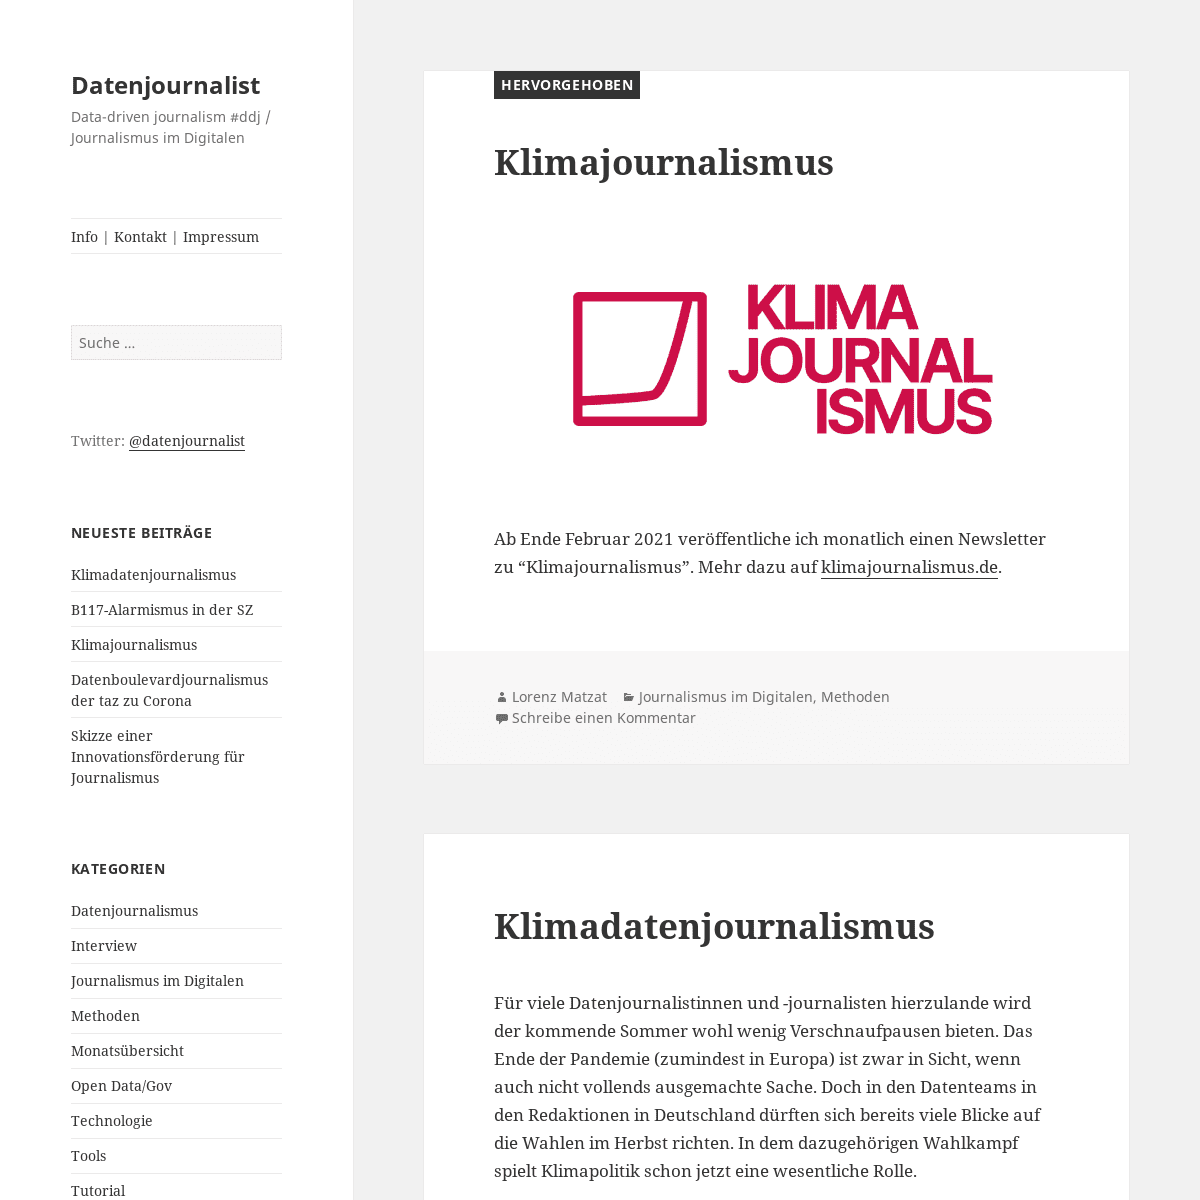 A complete backup of https://datenjournalist.de